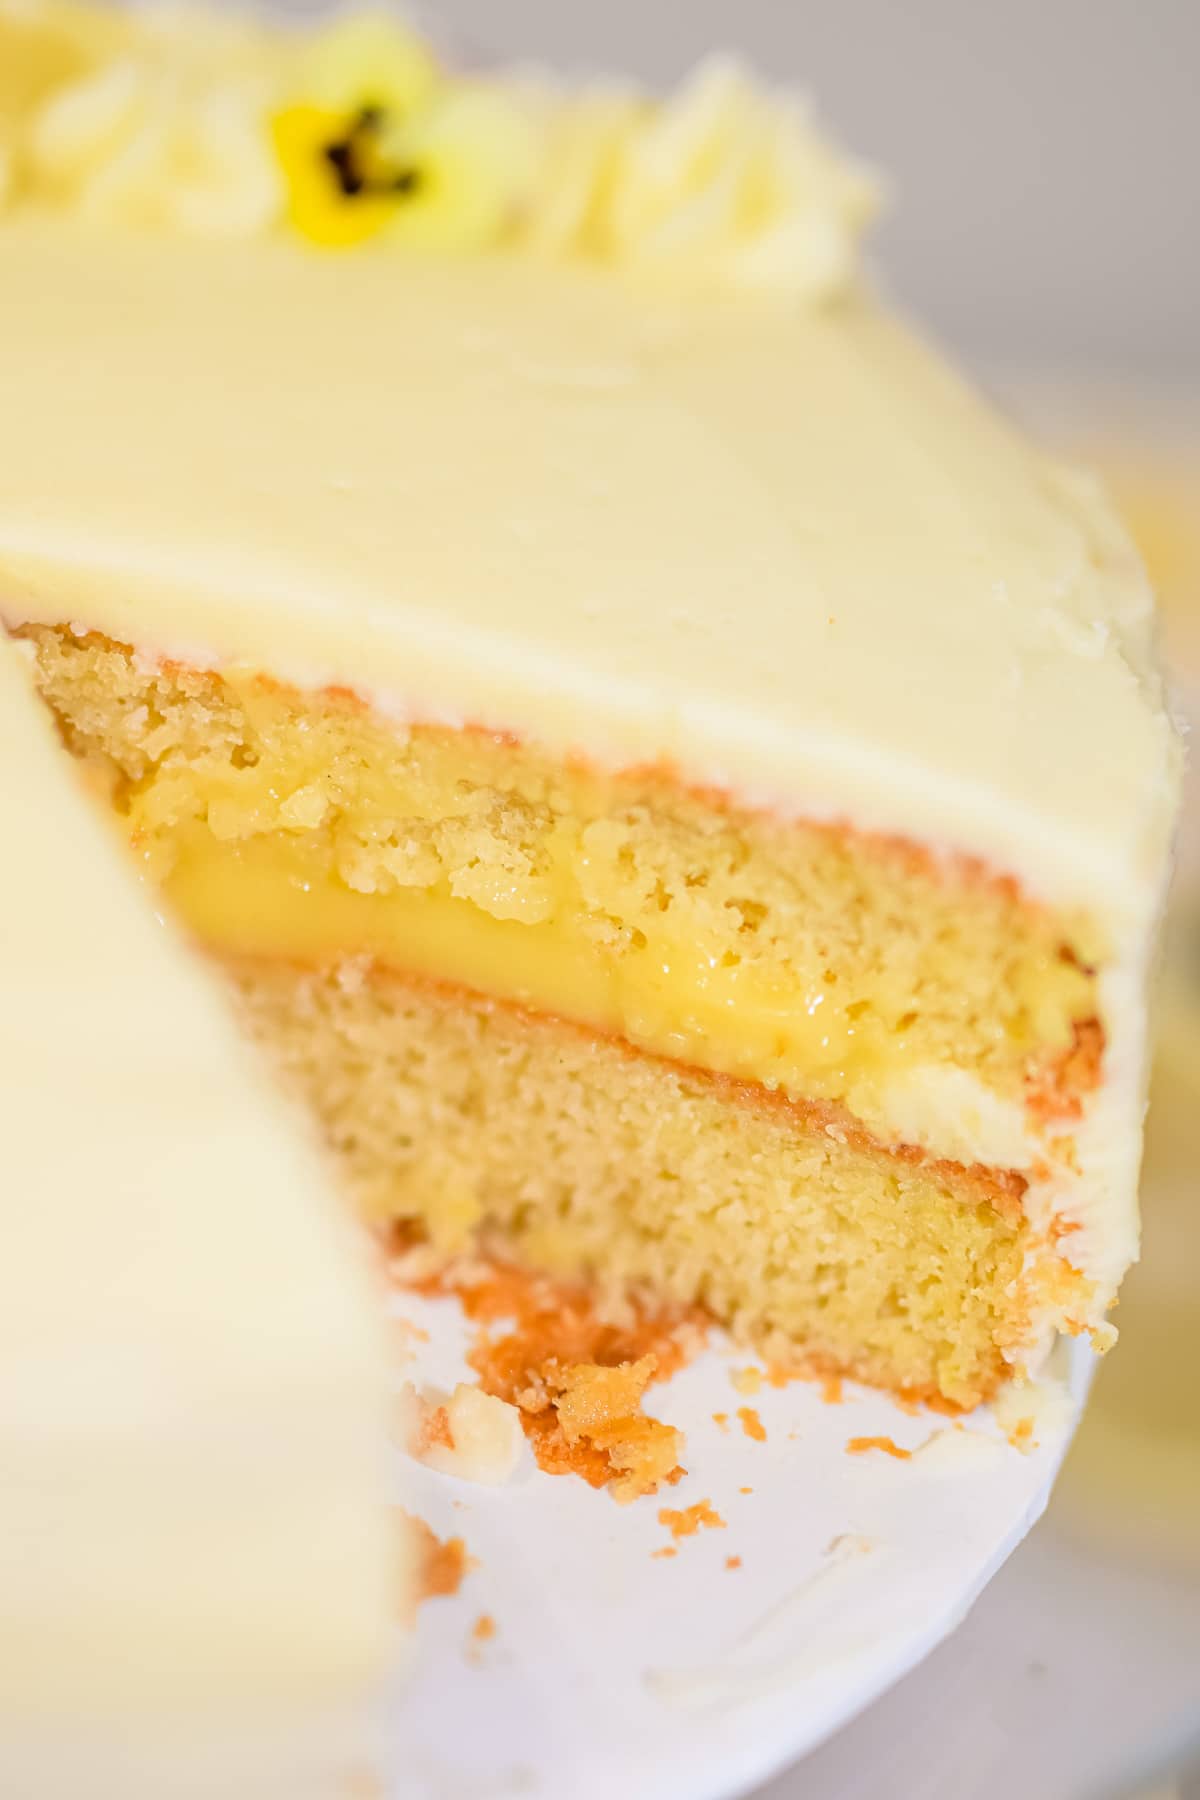 lemon curd cake filling between two layers of lemon cake